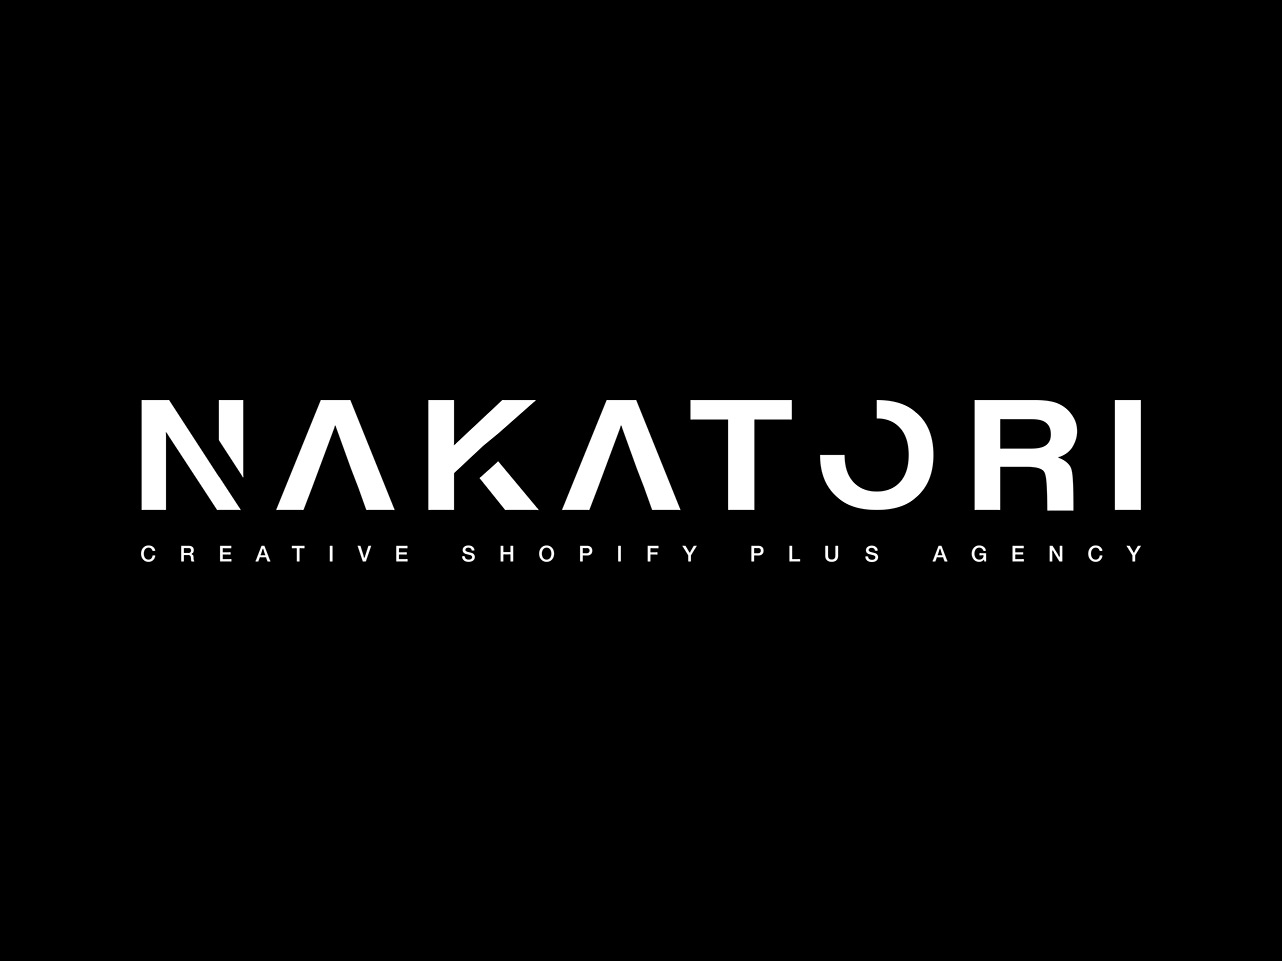 Nakatori